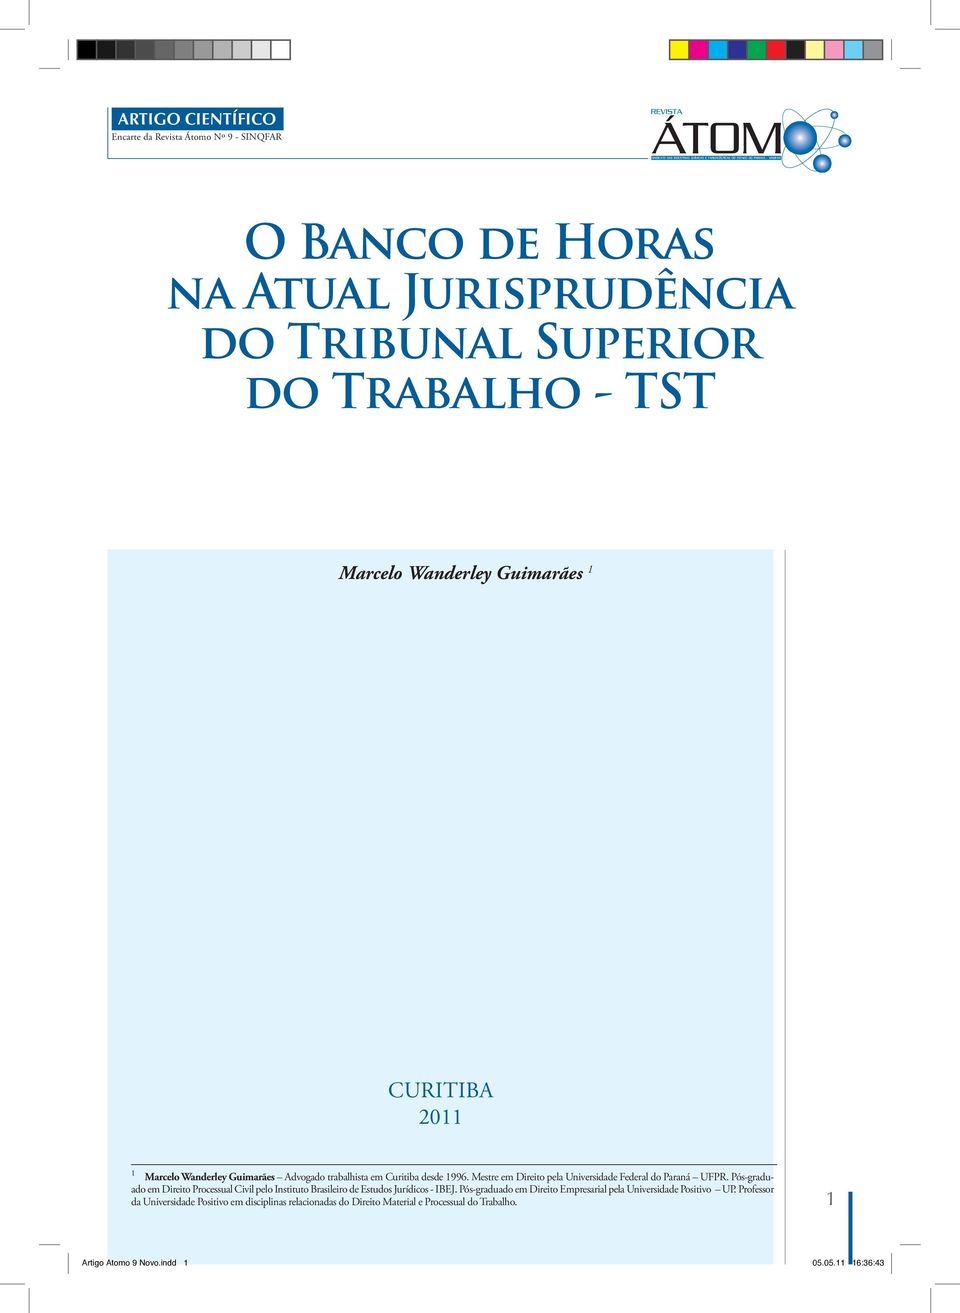 Pós-graduado em Direito Processual Civil pelo Instituto Brasileiro de Estudos Jurídicos - IBEJ.